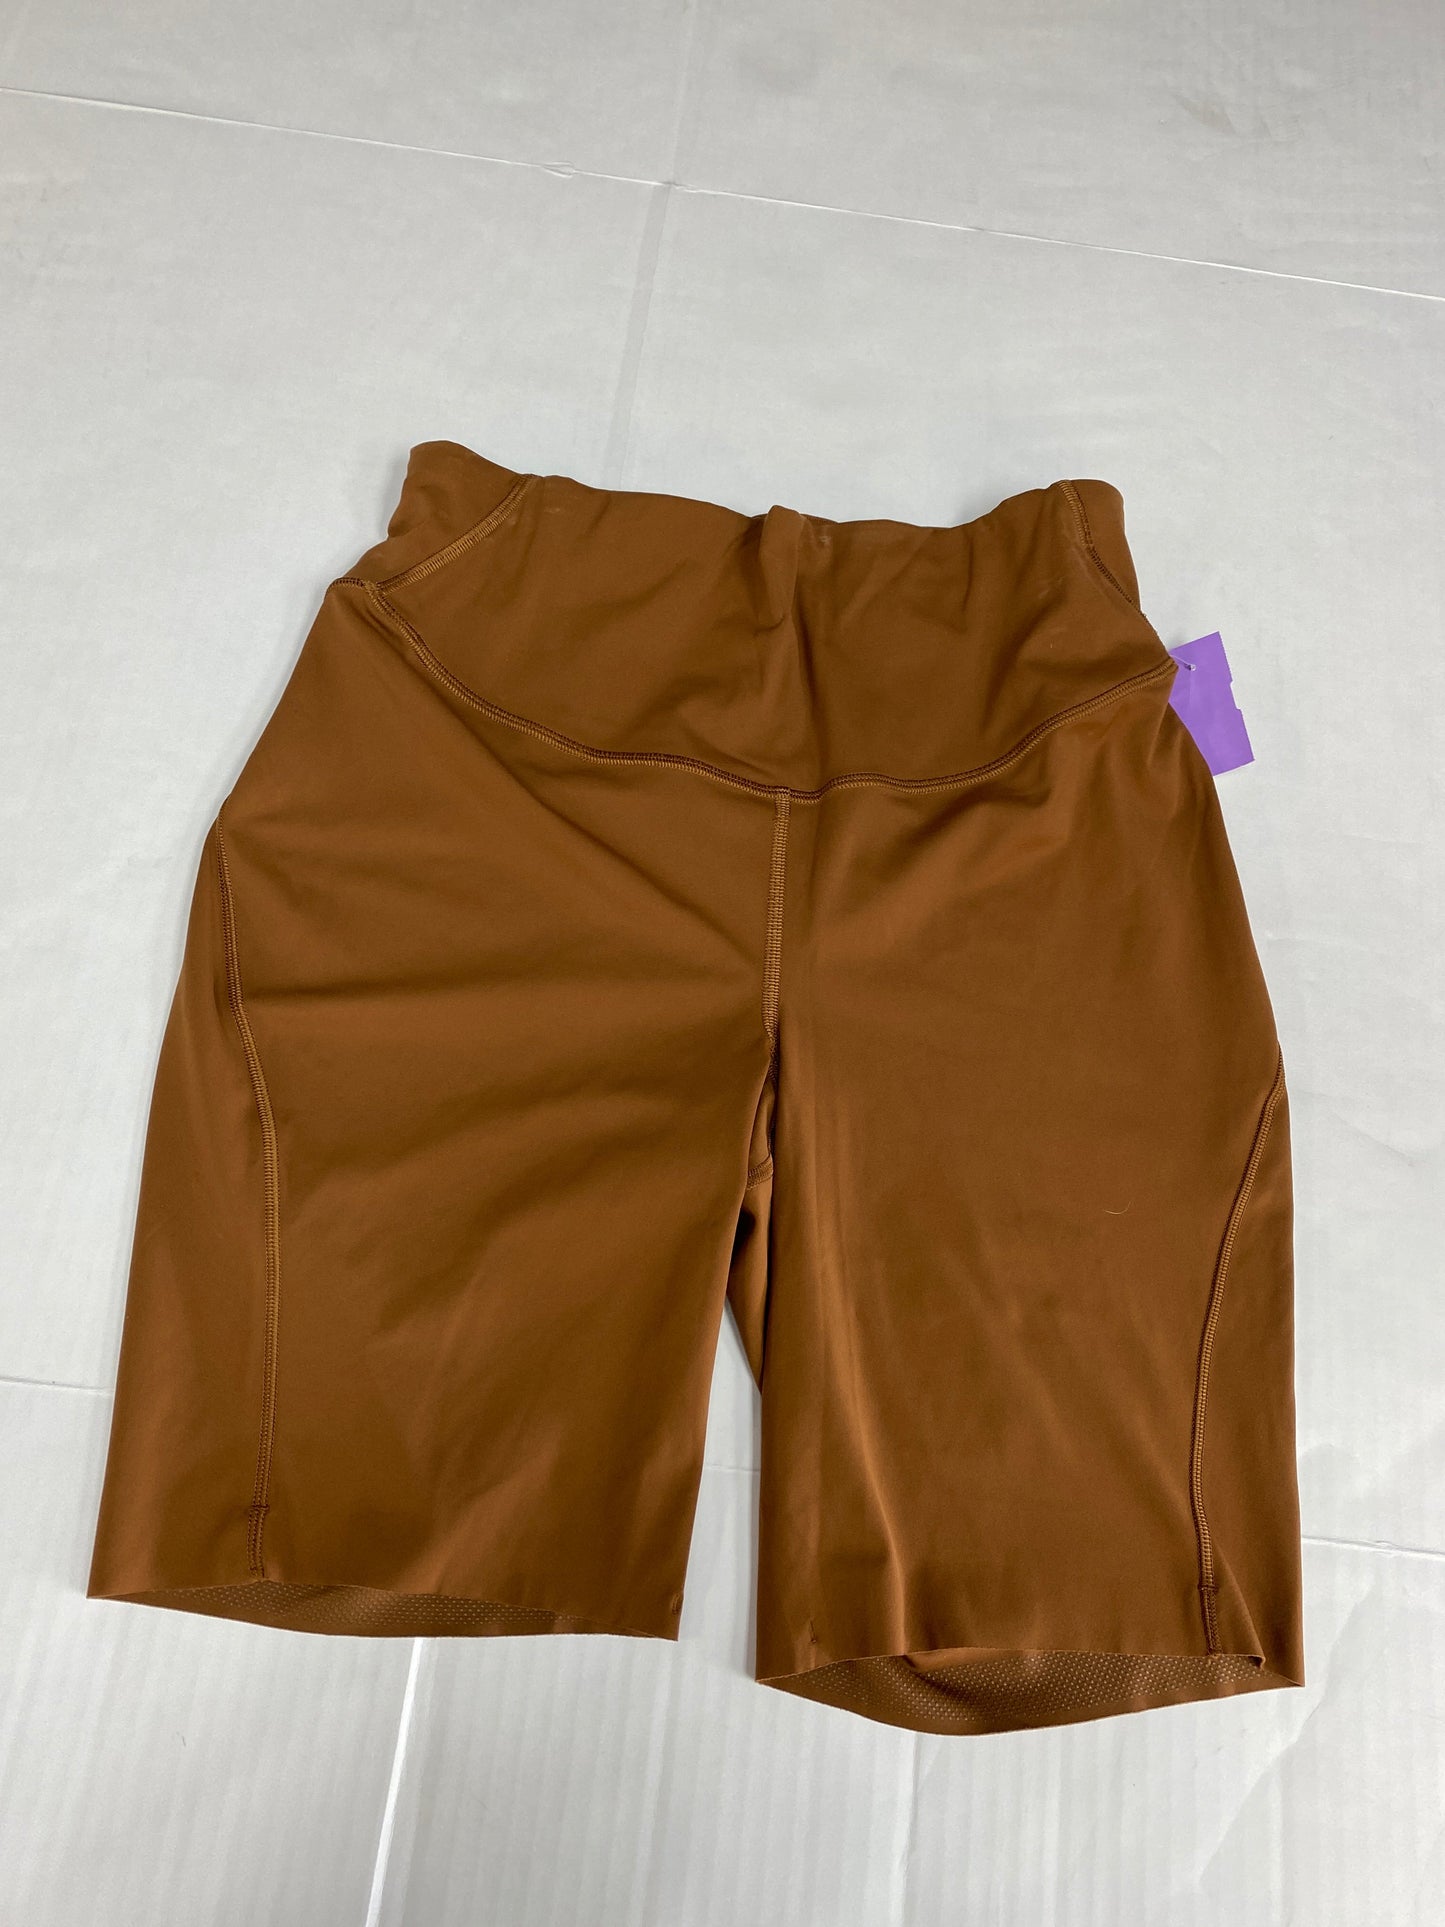 Brown Athletic Shorts Lululemon, Size 10